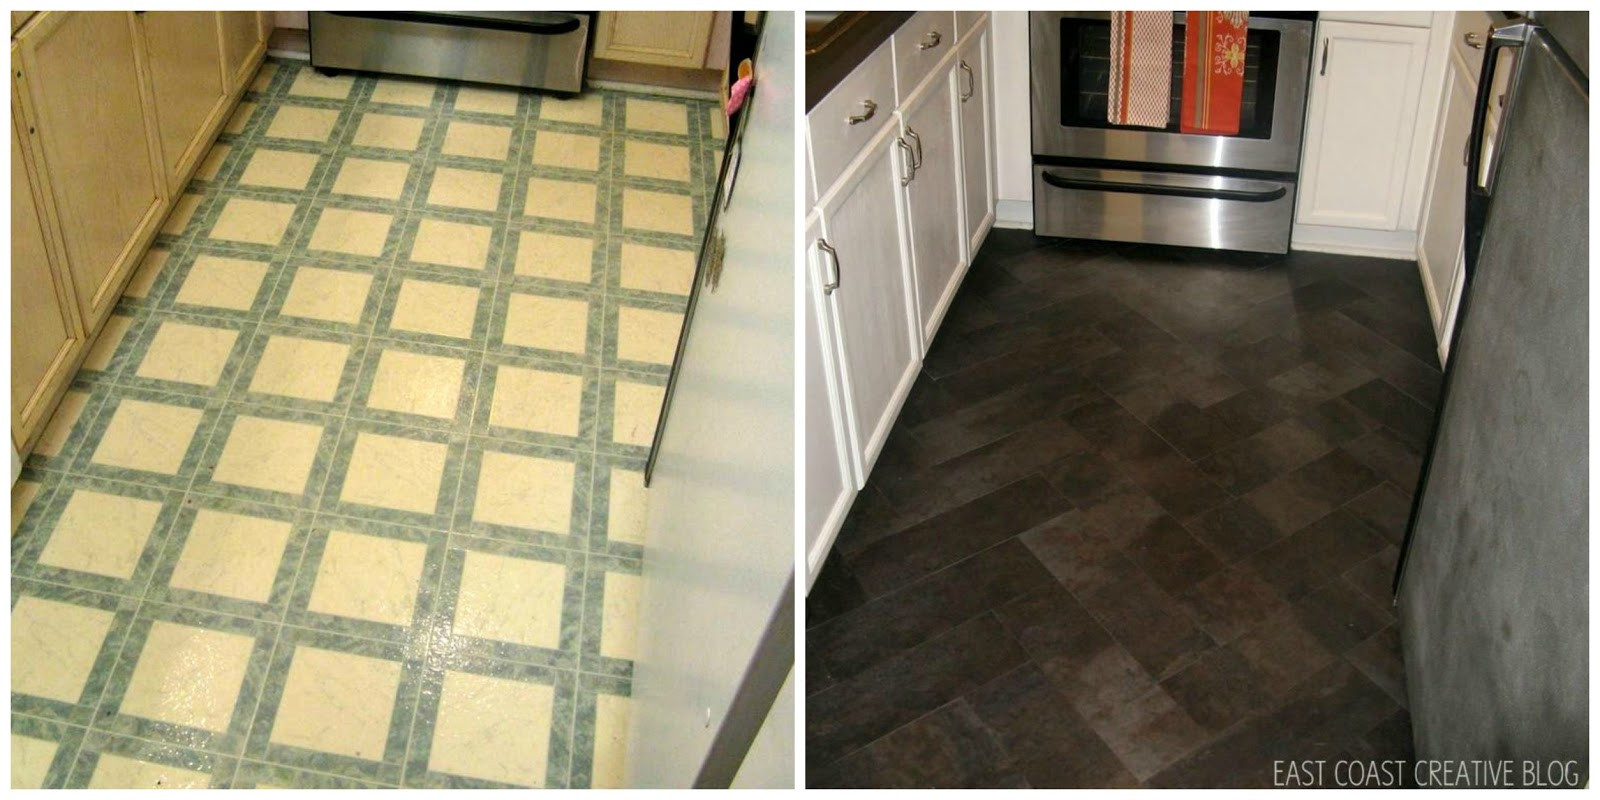 Best ideas about DIY Floor Tile
. Save or Pin DIY Herringbone "Tile" Floor Using Peel & Stick Vinyl Now.